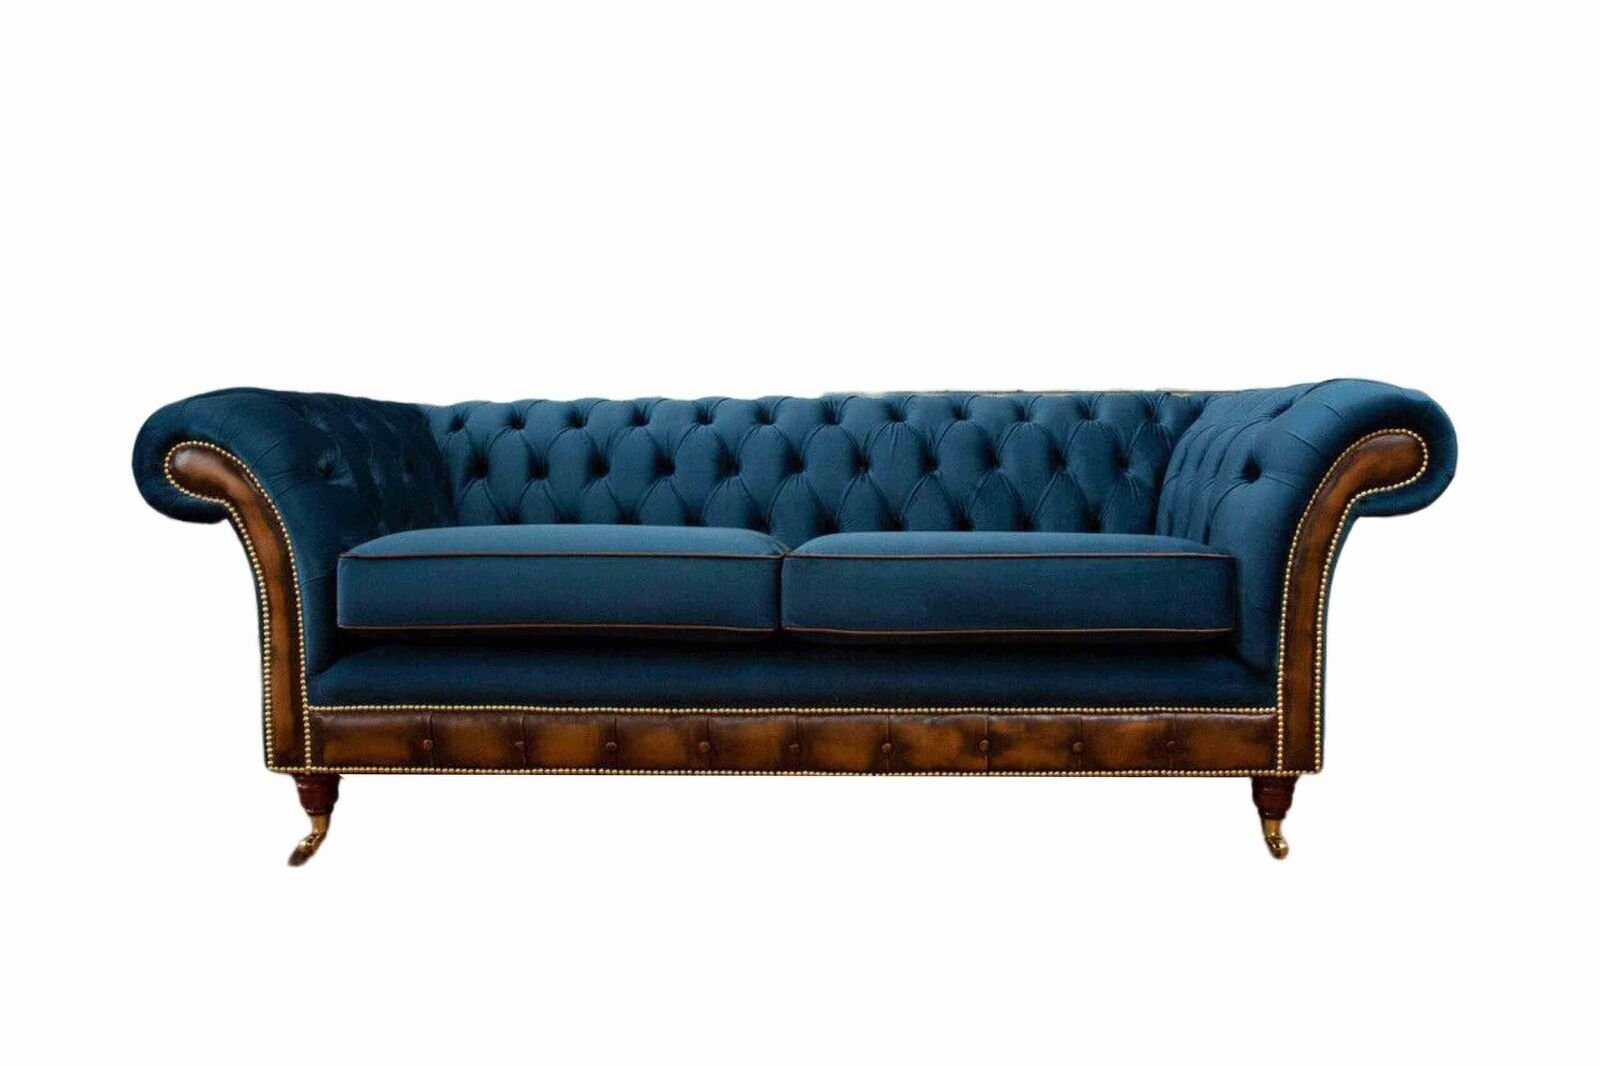 JVmoebel Sofa Designer Blauer Dreisitzer Couch Polster Sofa Chesterfield, Made in Europe